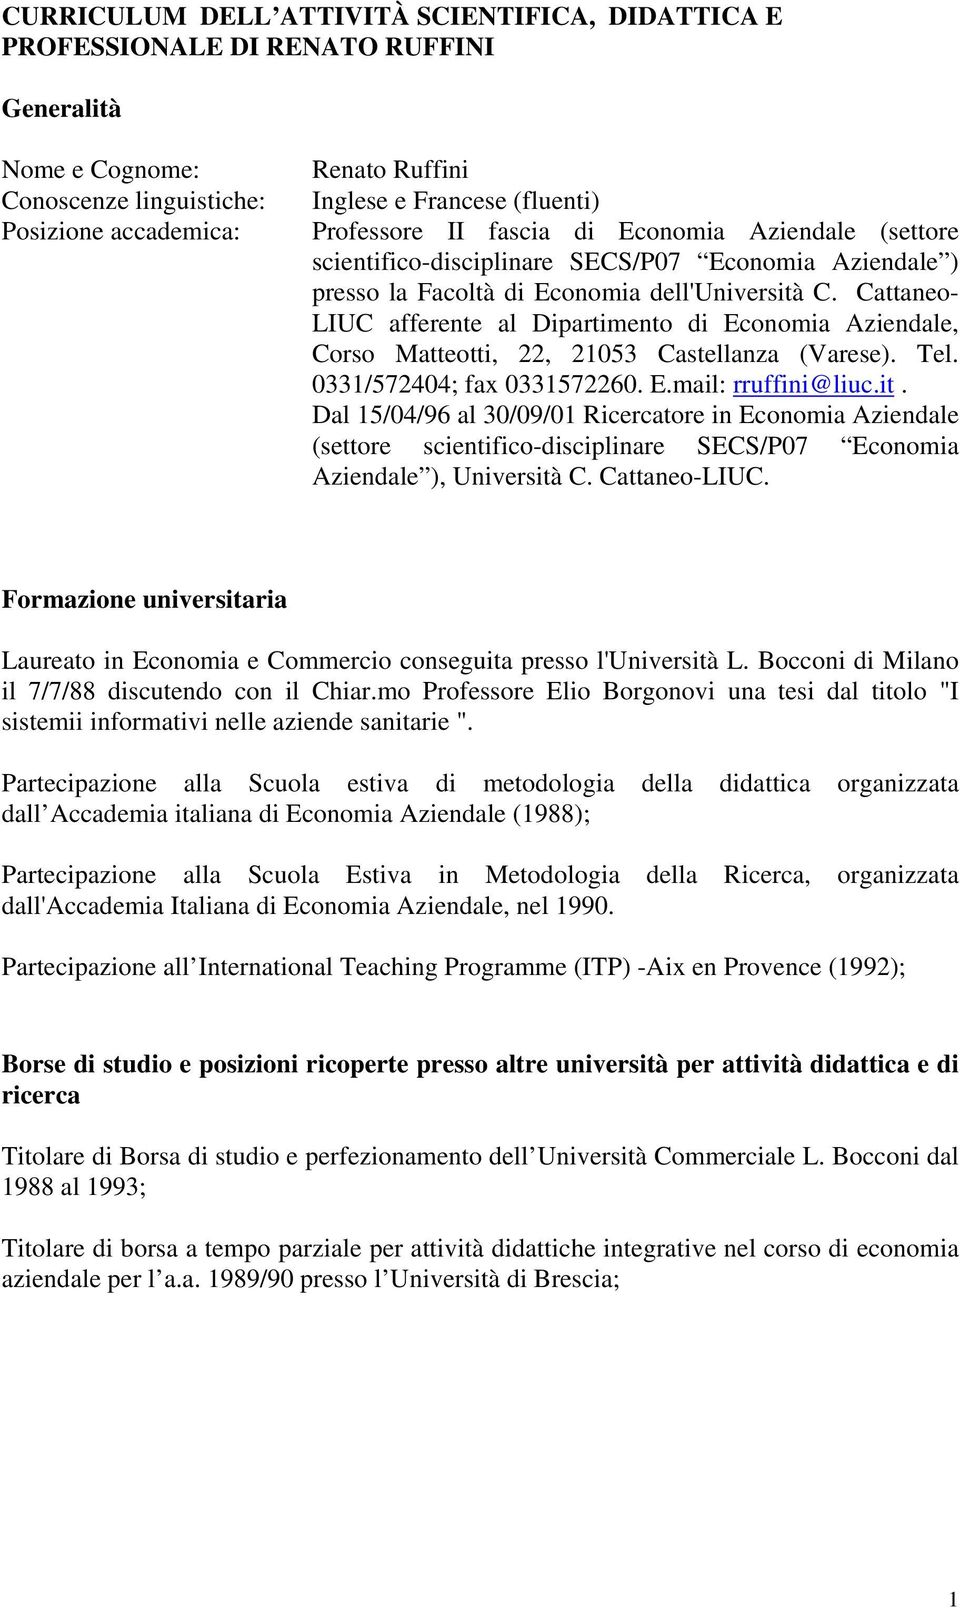 Cattaneo- LIUC afferente al Dipartimento di Economia Aziendale, Corso Matteotti, 22, 21053 Castellanza (Varese). Tel. 0331/572404; fax 0331572260. E.mail: rruffini@liuc.it.